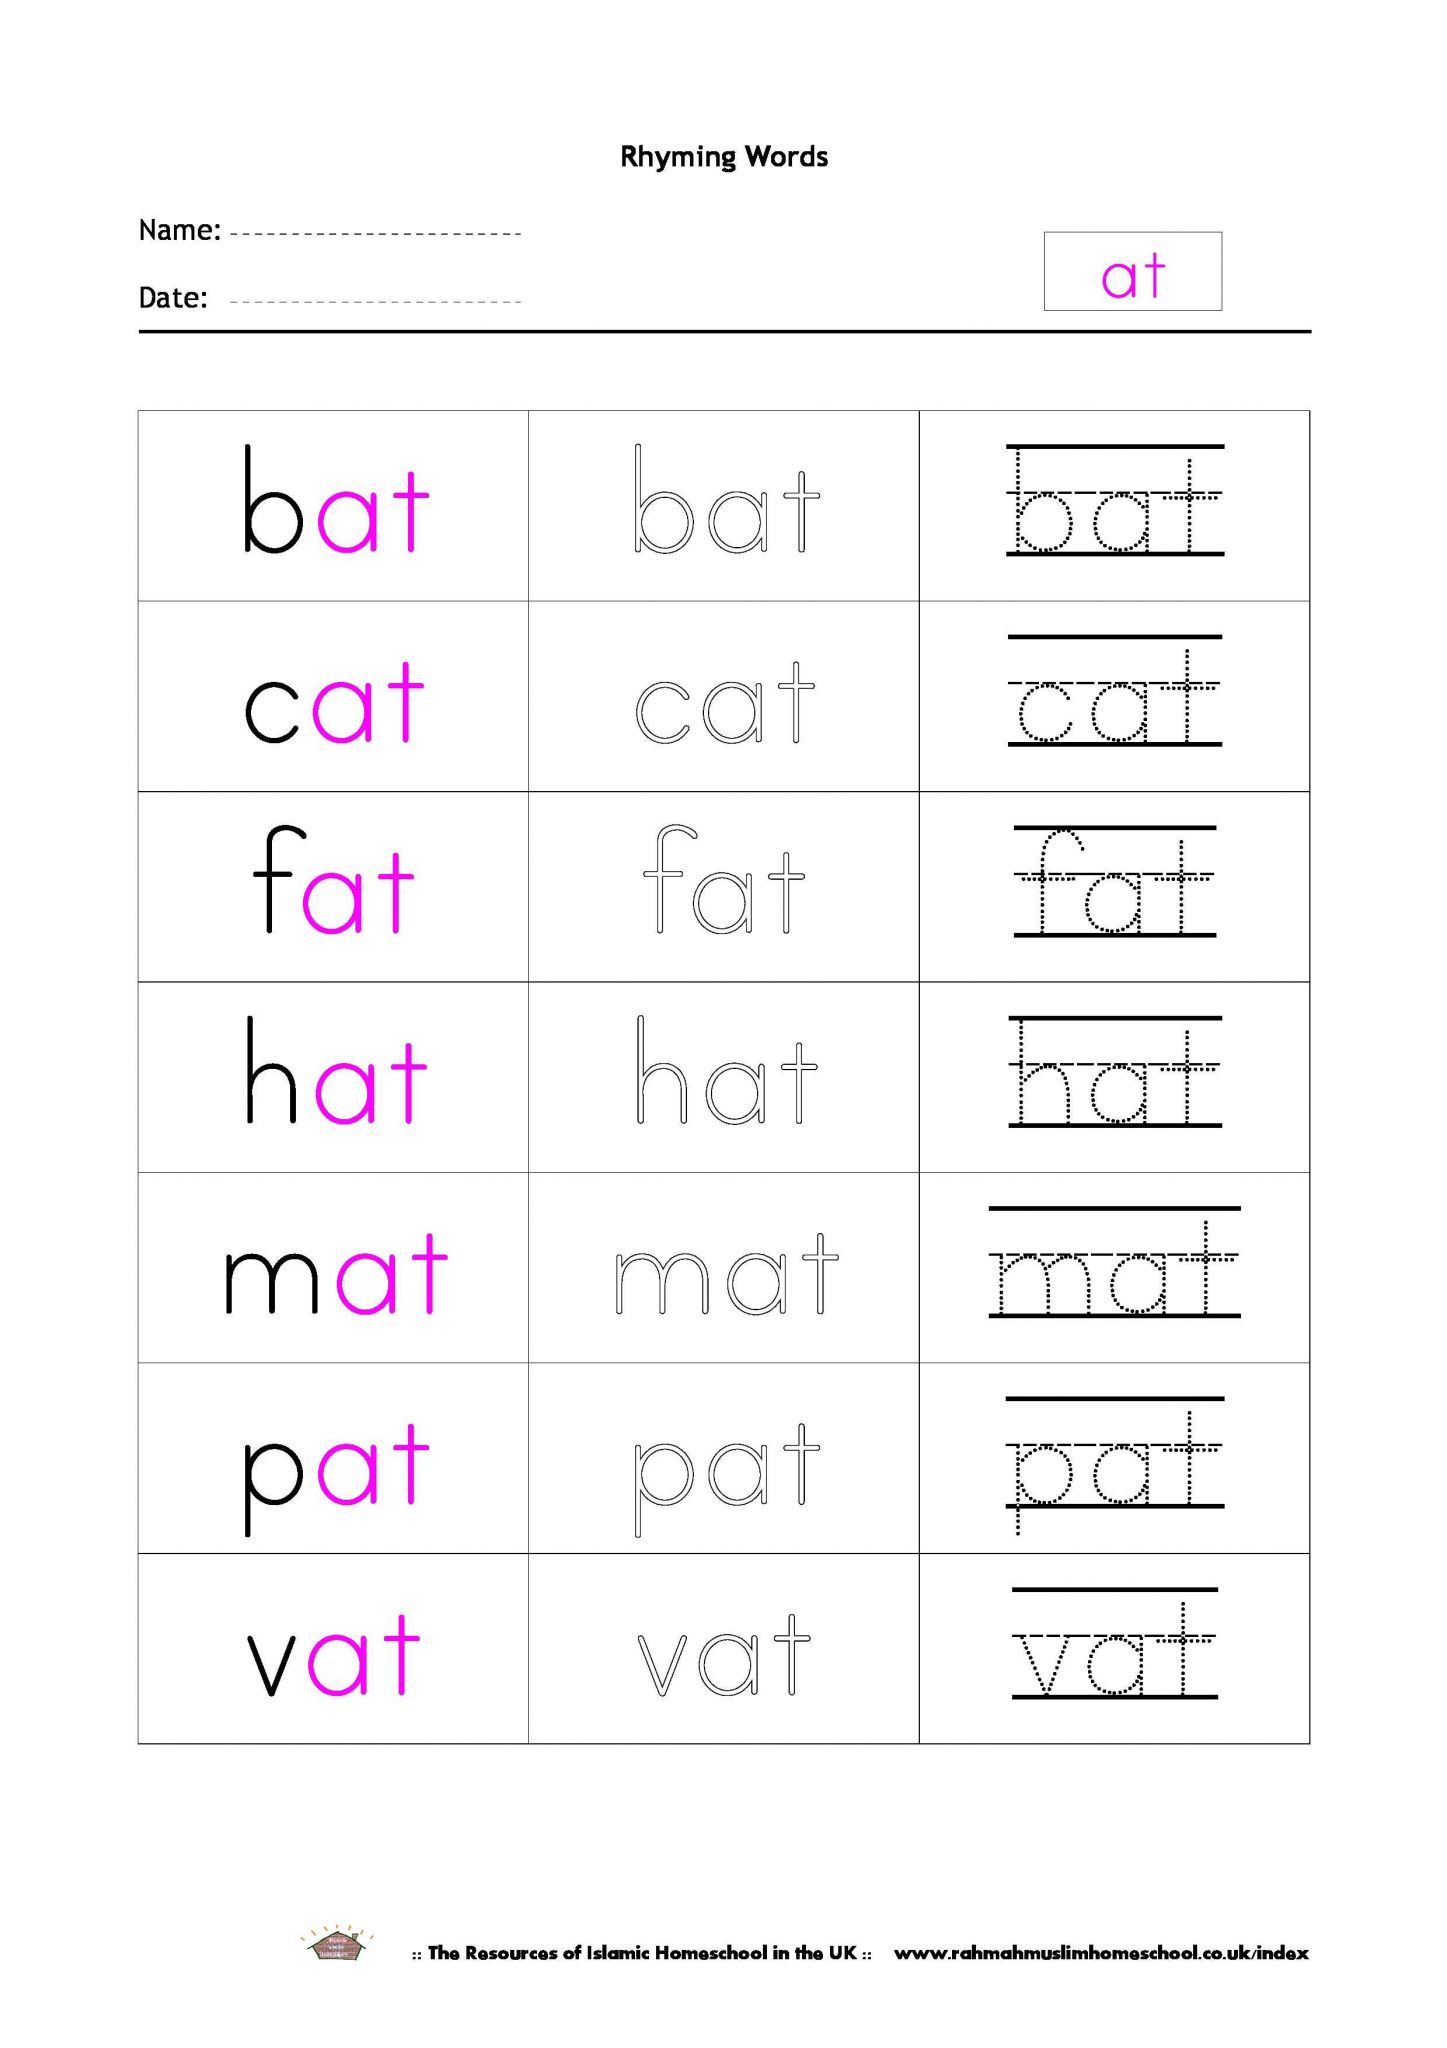 Rhyming Words Worksheets for Kindergarten together with Kids at Words Worksheet Make Pound Words Printable Worksheets